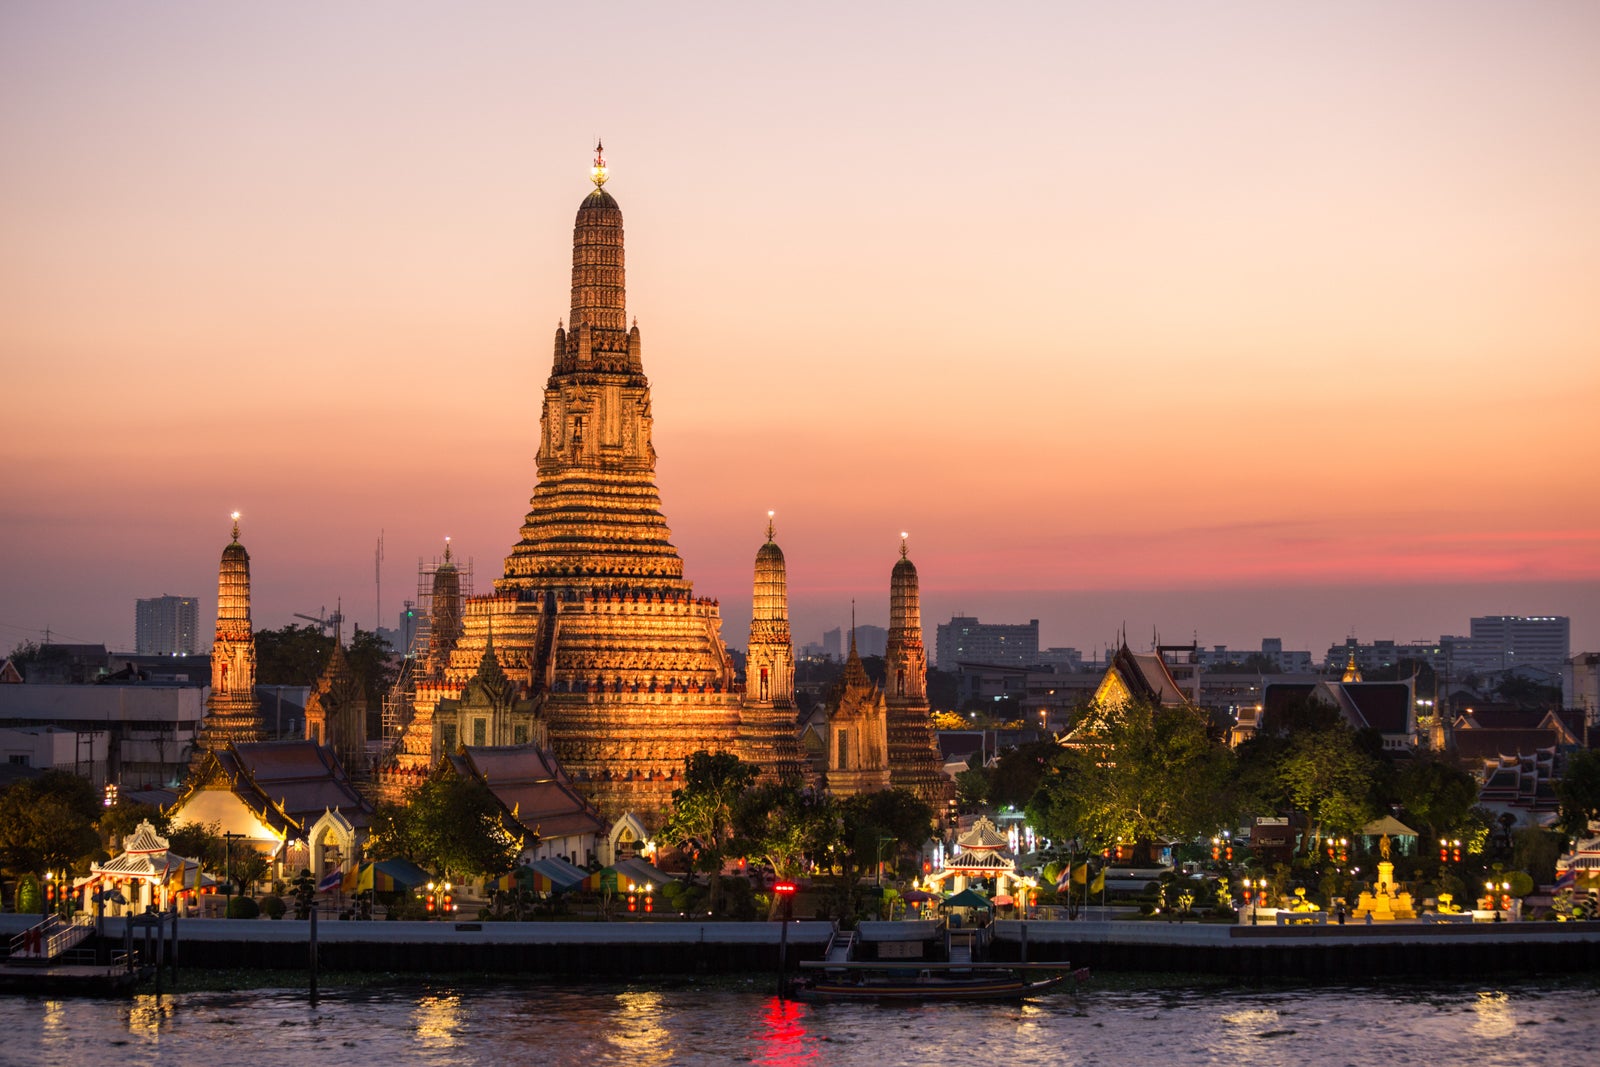 Sunset over Wat Arun temple, Bangkok, Thailand